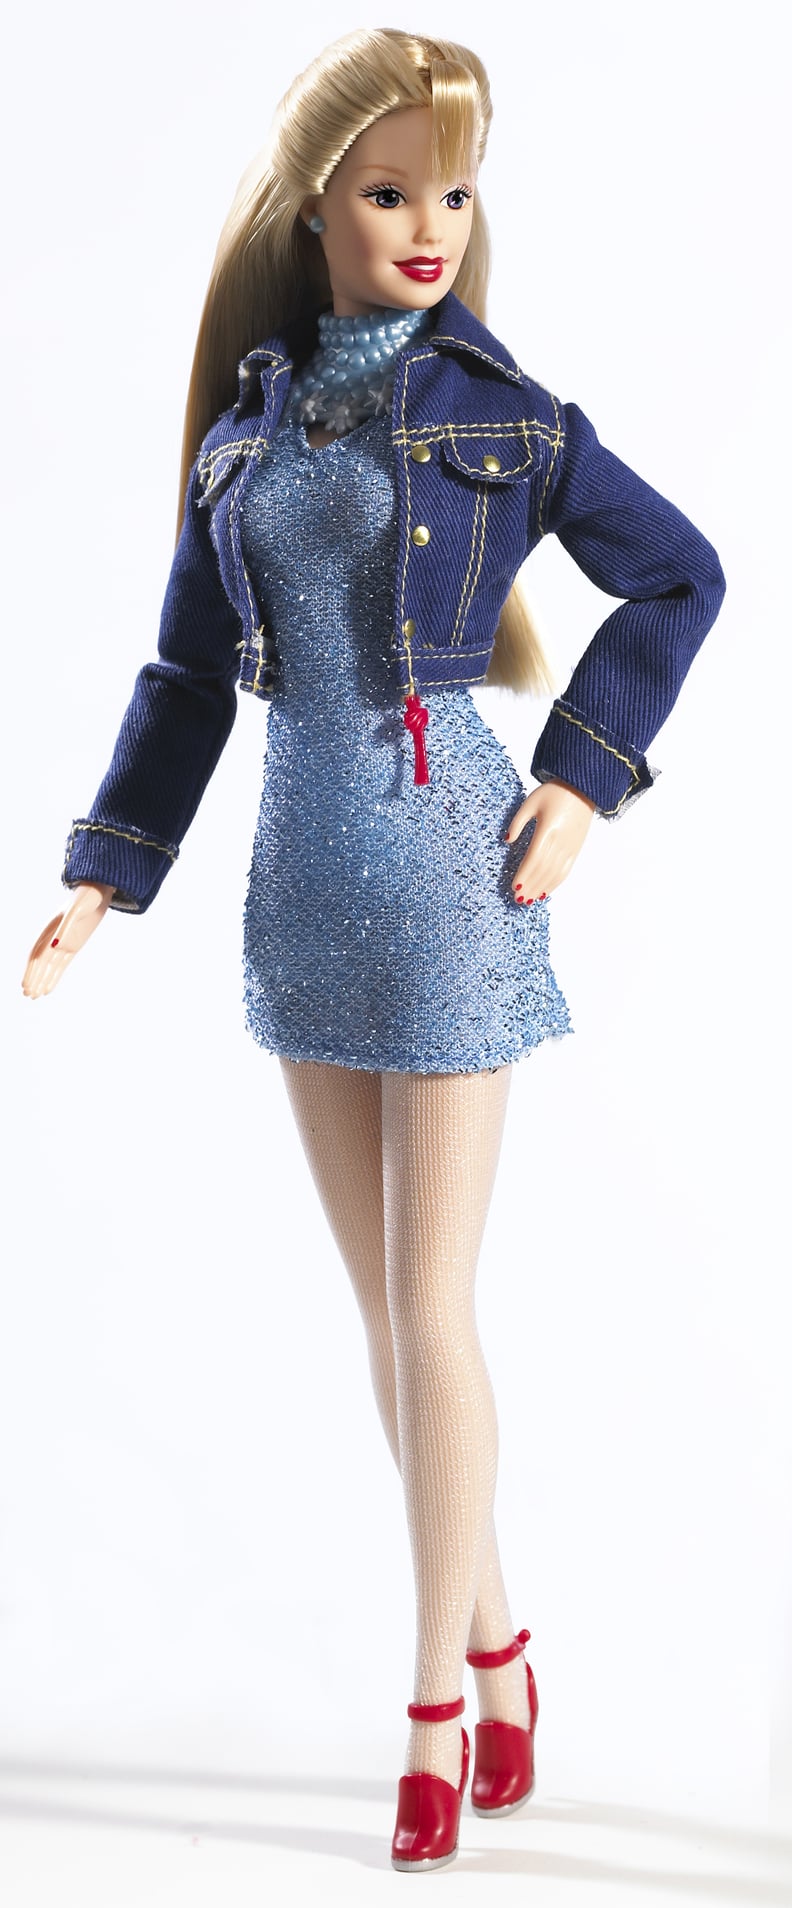 Barbie in 1999